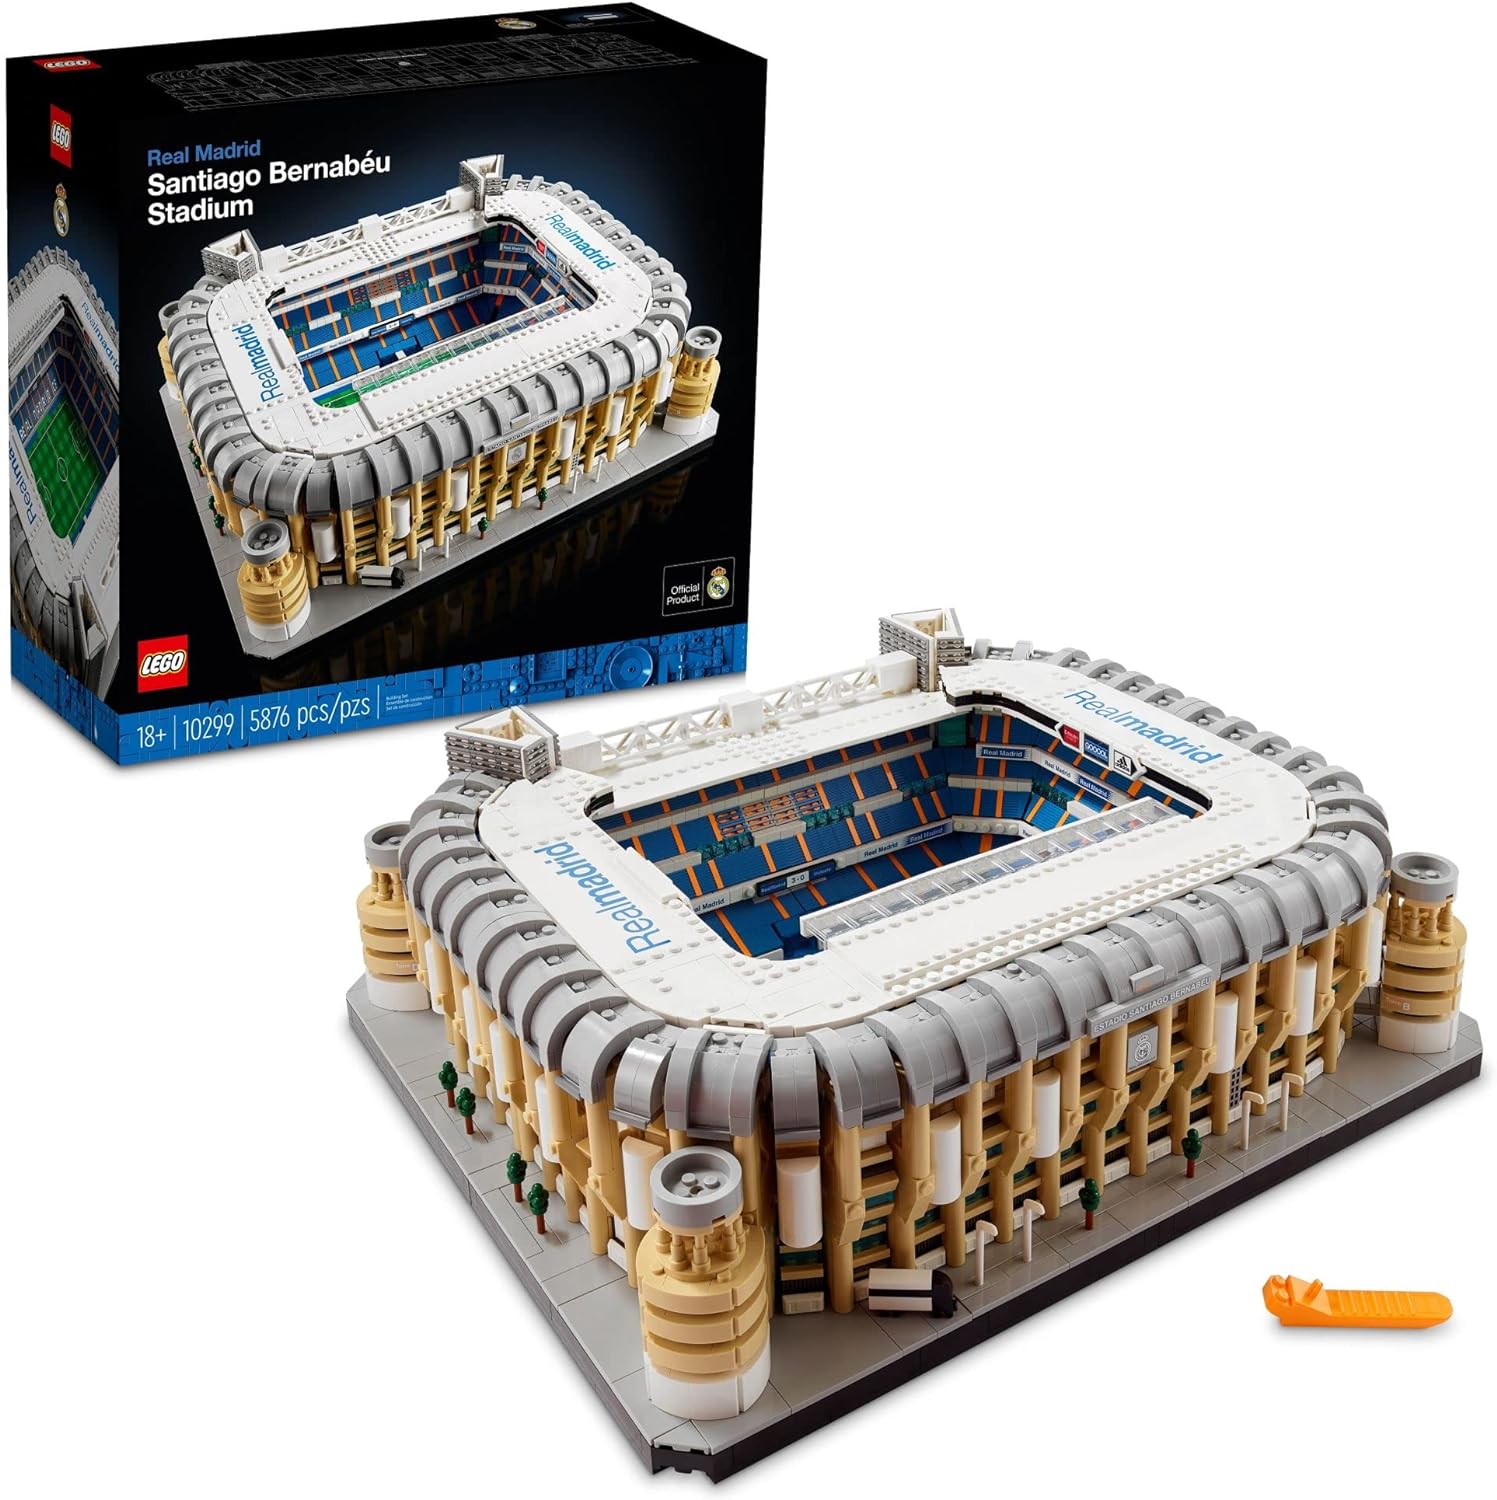 LEGO® Real Madrid – Estádio Santiago Bernabéu 10299 Kit de Construção; Construir um Modelo Detalhado do Famoso Estádio (5876 peças)